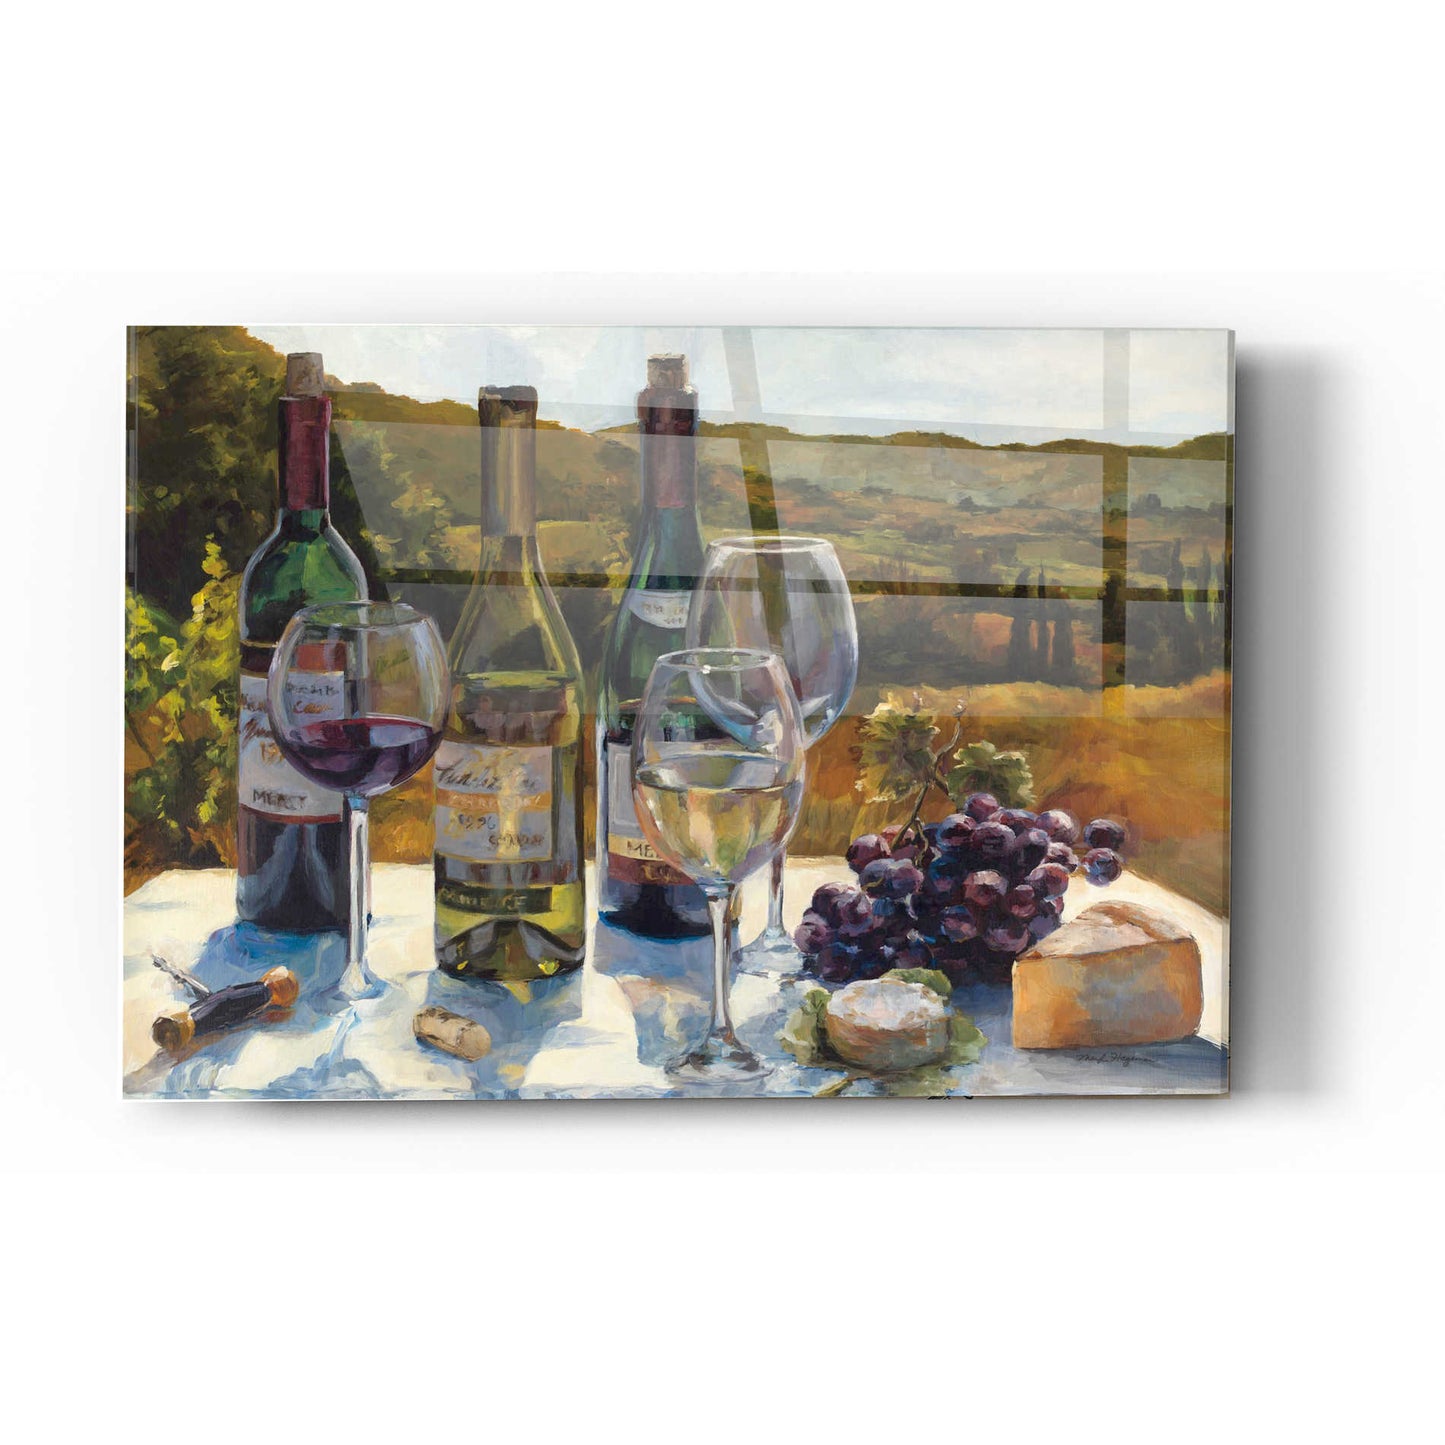 Epic Art 'A Wine Tasting' by Marilyn Hageman, Acrylic Glass Wall Art,12x16